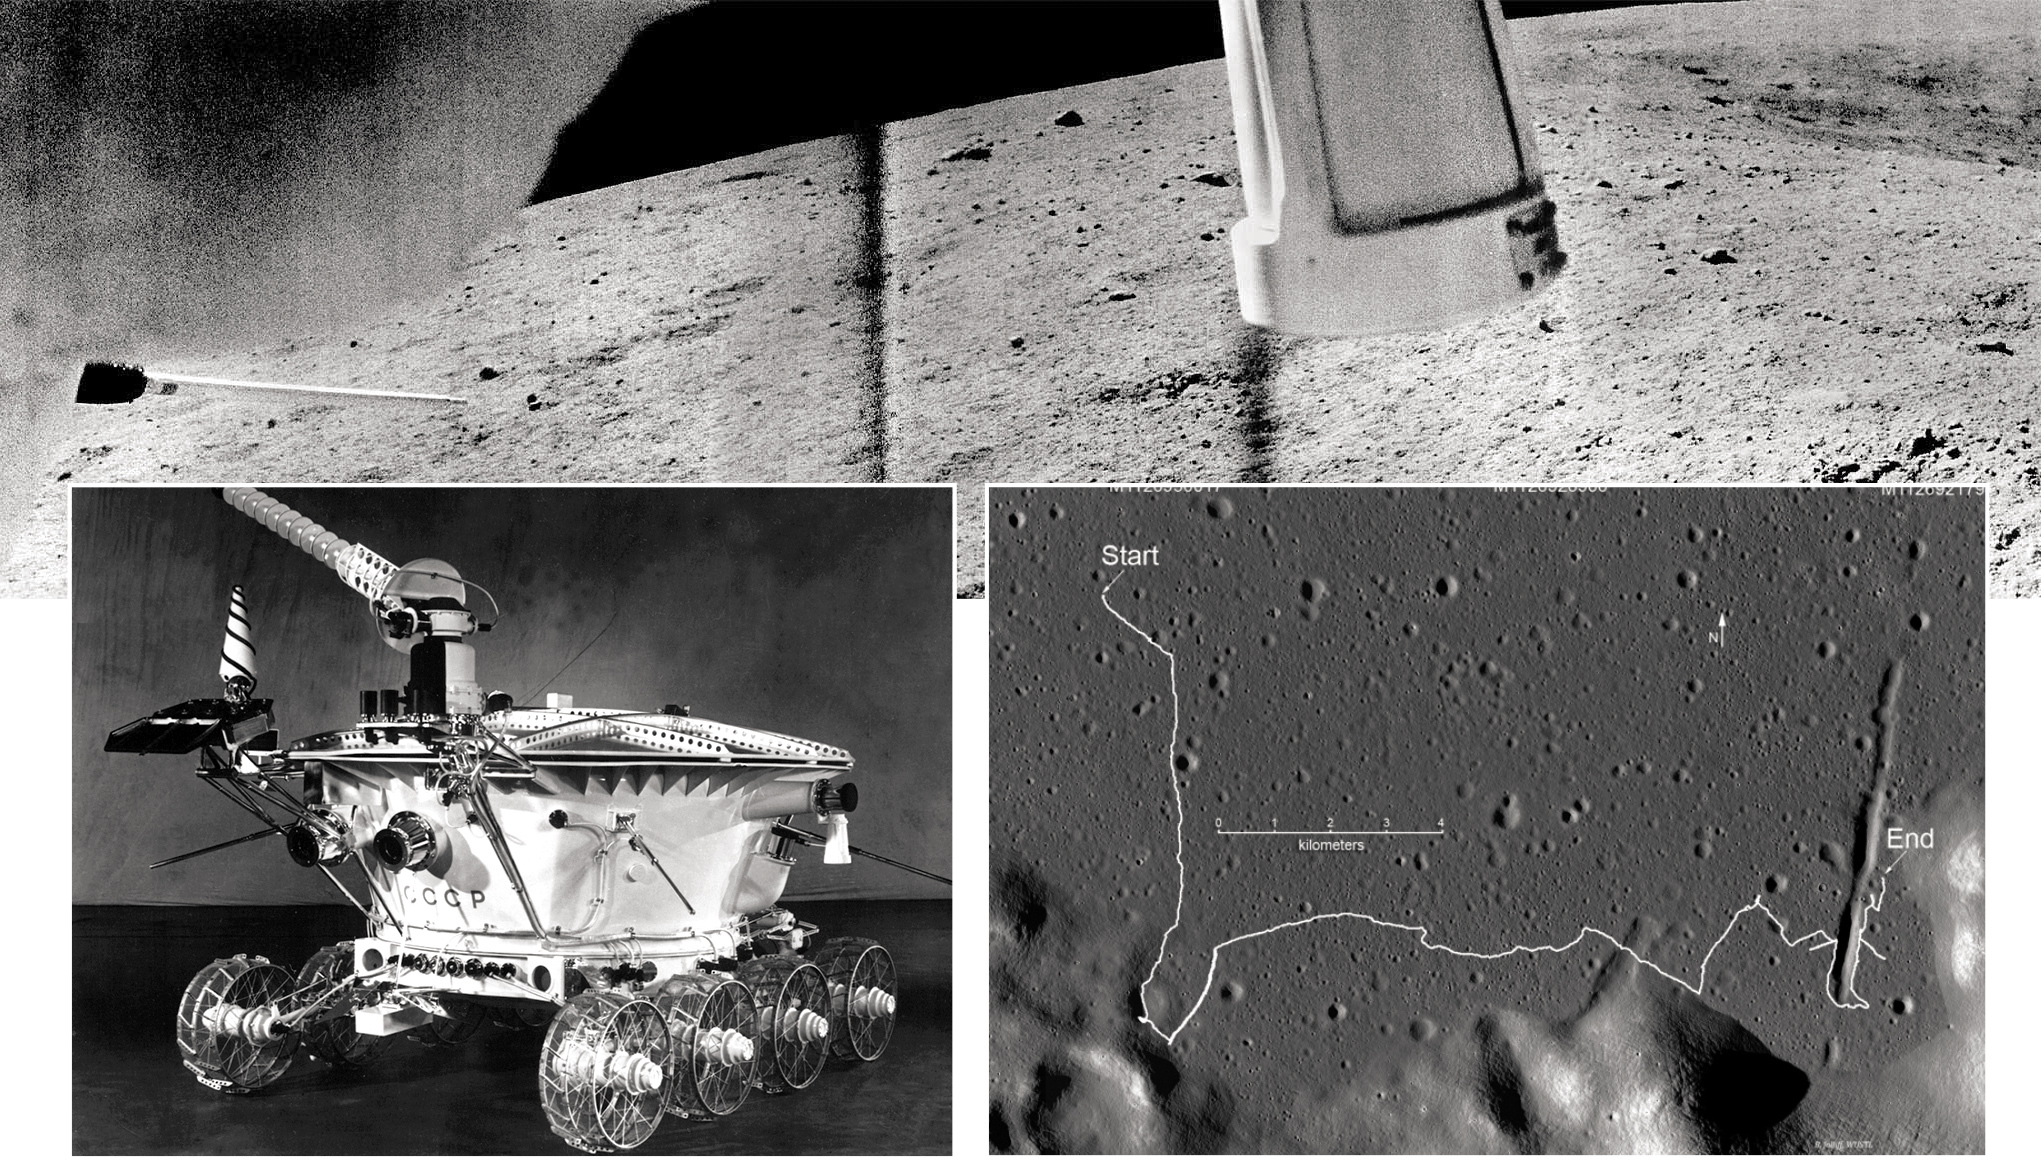 Какой аппарат помогал исследовать поверхность луны. Луноход 2. Поверхность Луны. Луноход 2 лунные пирамиды. Луноход-2 из бумаги.